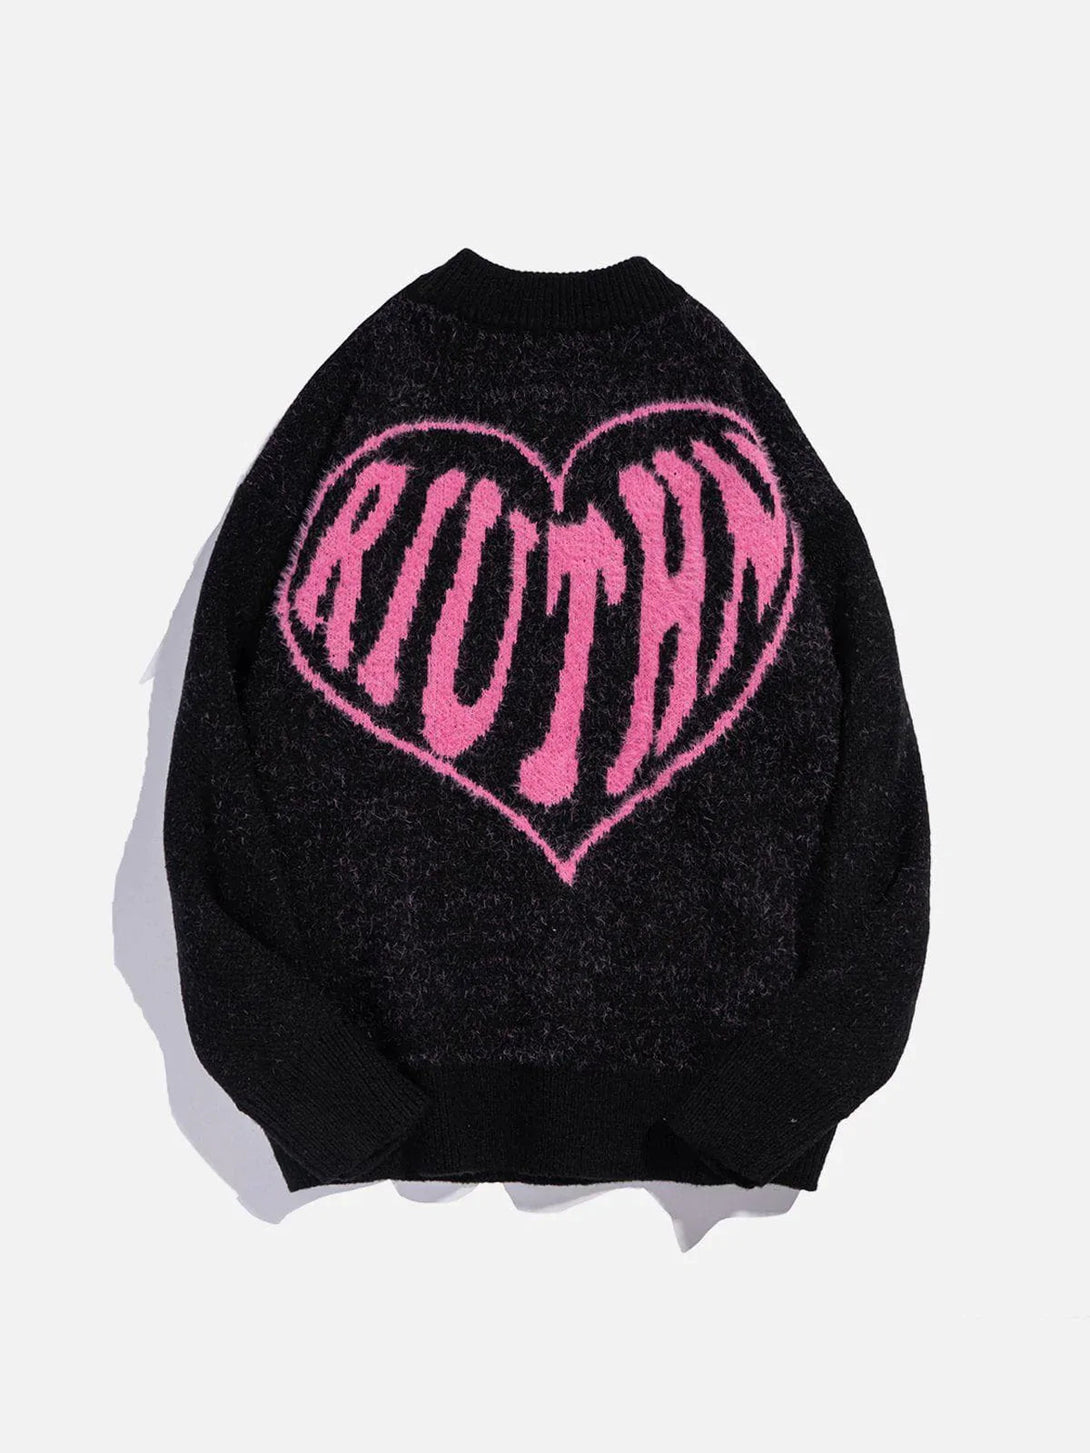 Majesda® - Heart Letters Pattern Sweater outfit ideas streetwear fashion